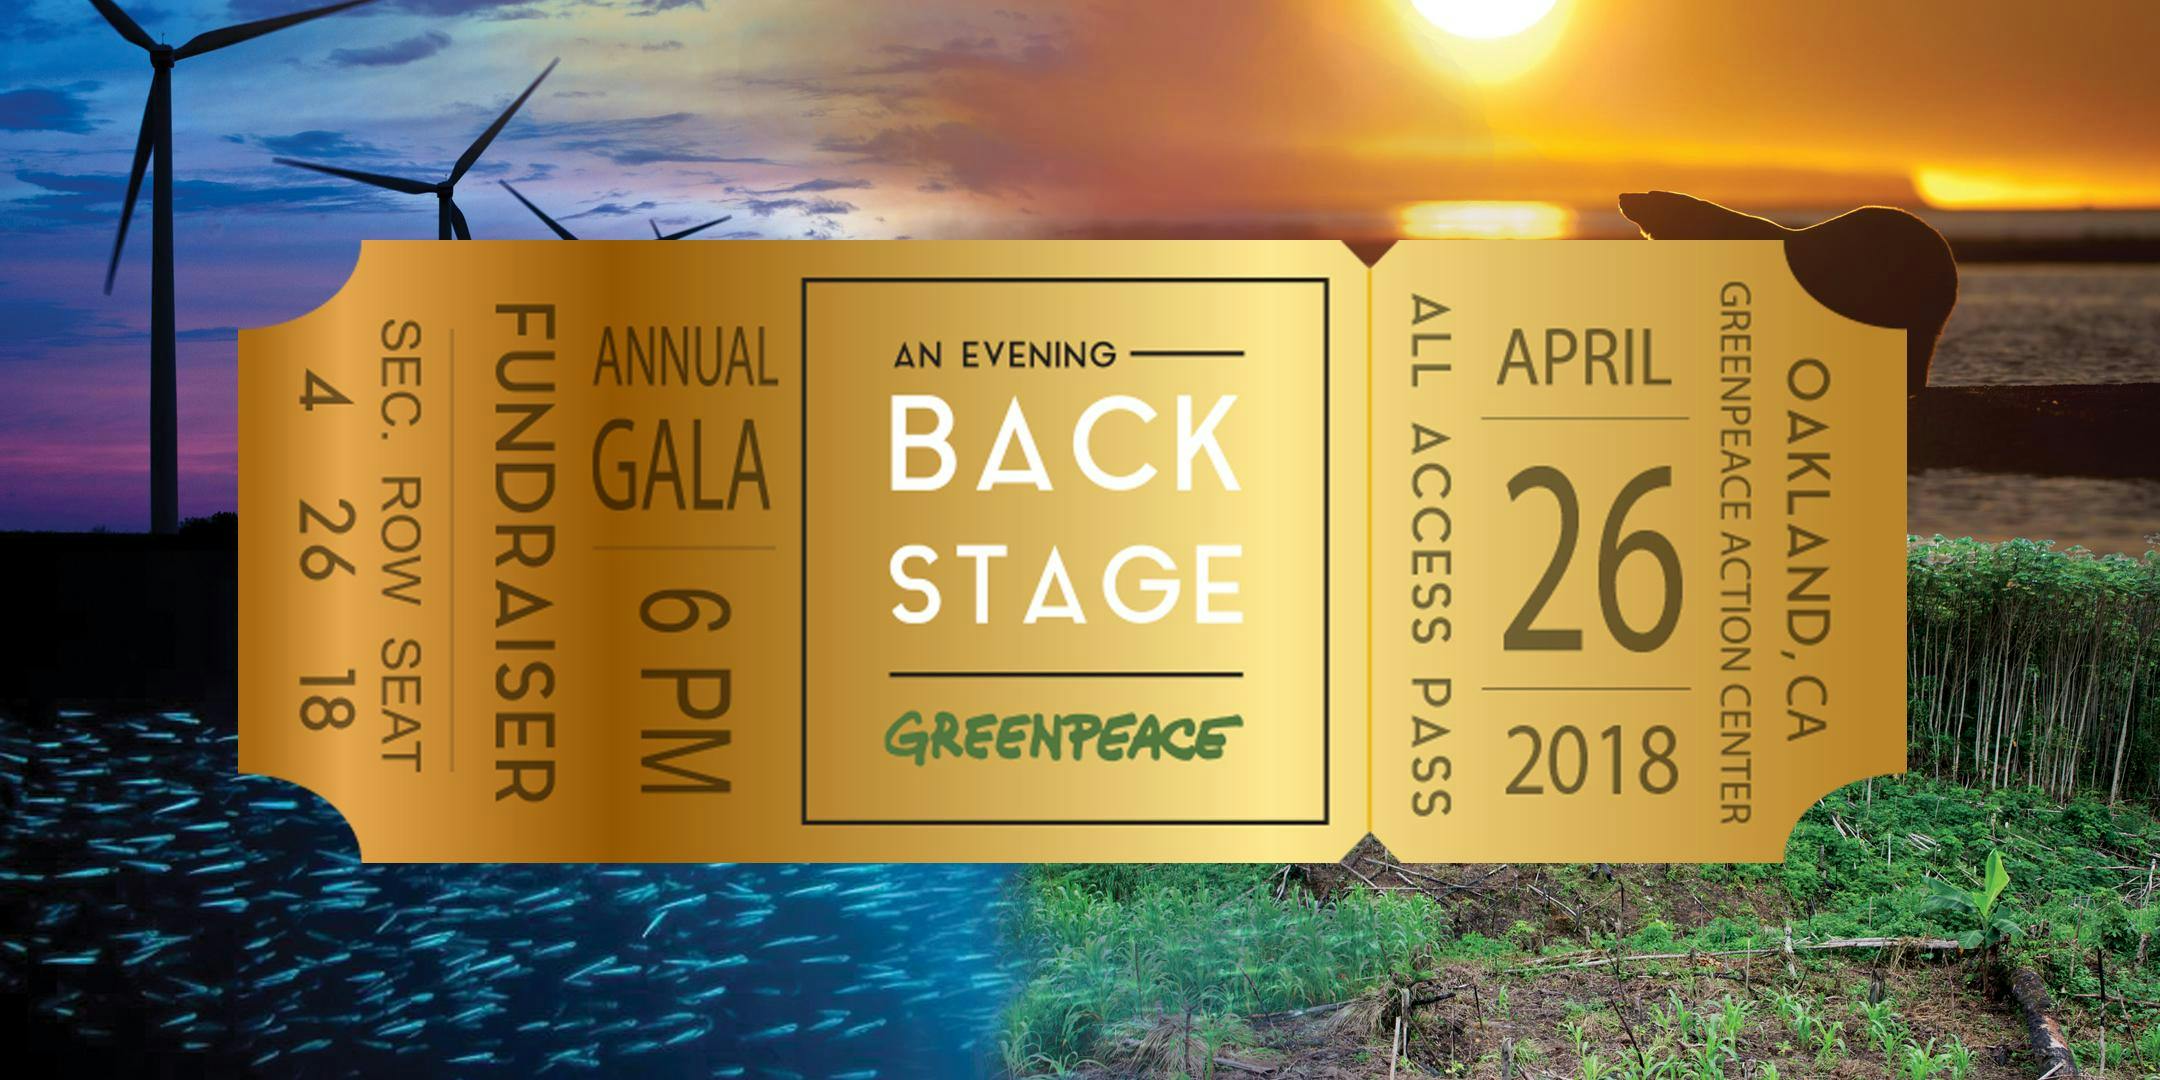 Greenpeace Backstage Gala 2018